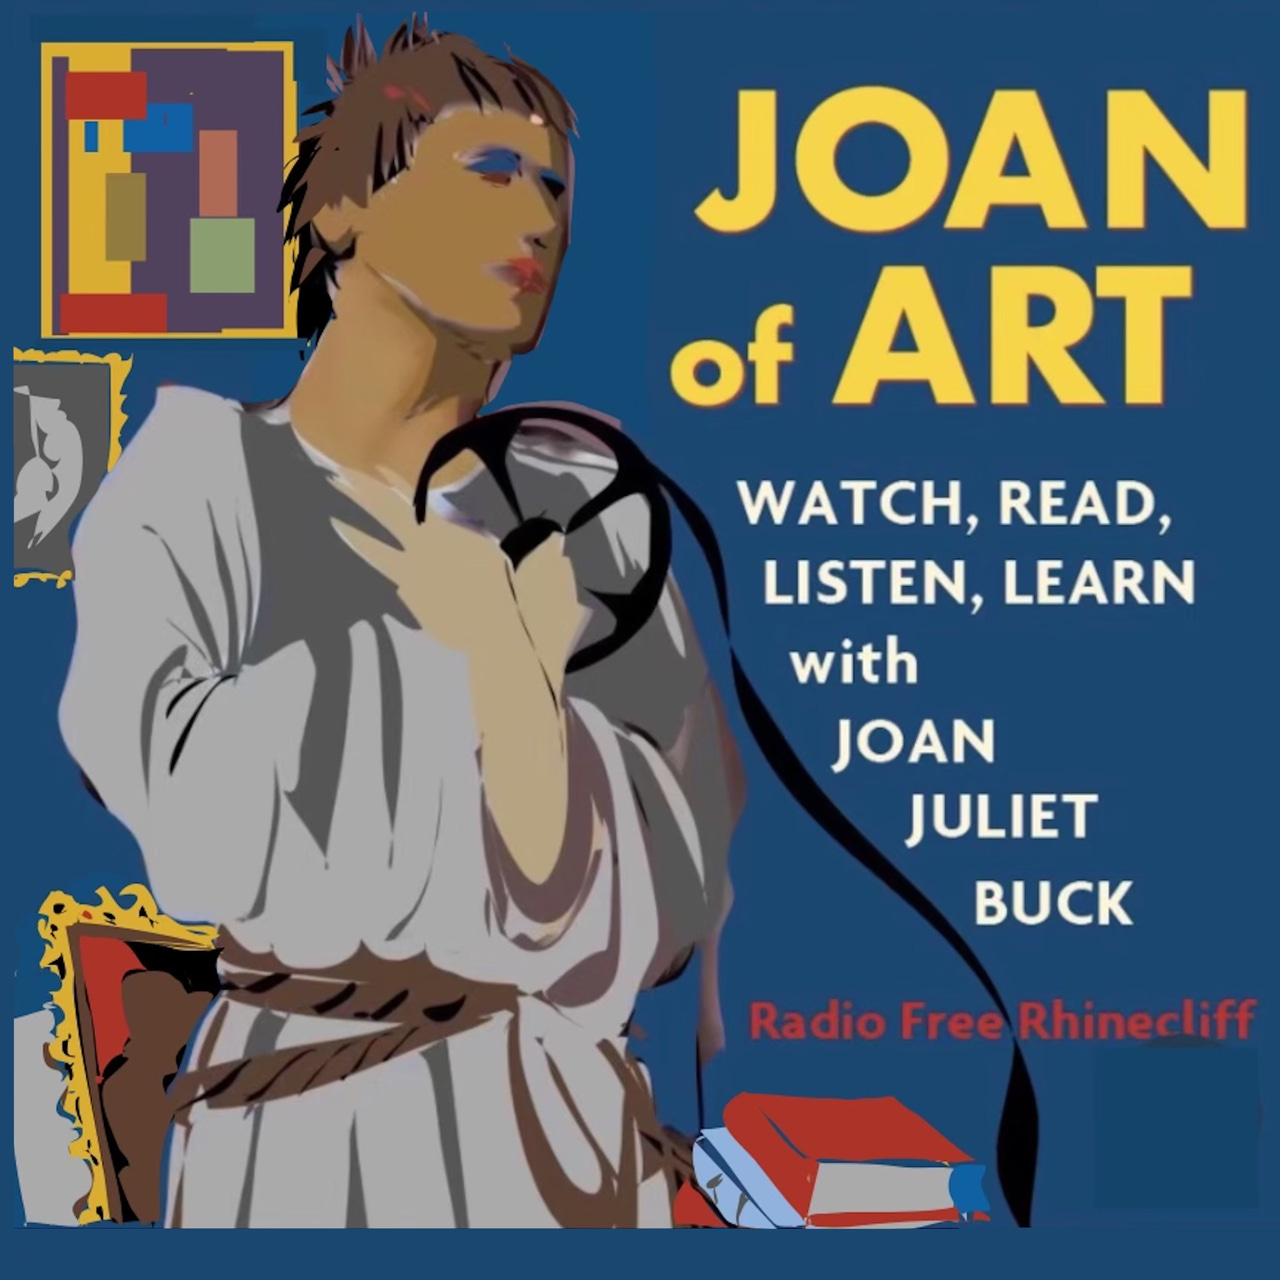 Artwork for Joan of Art